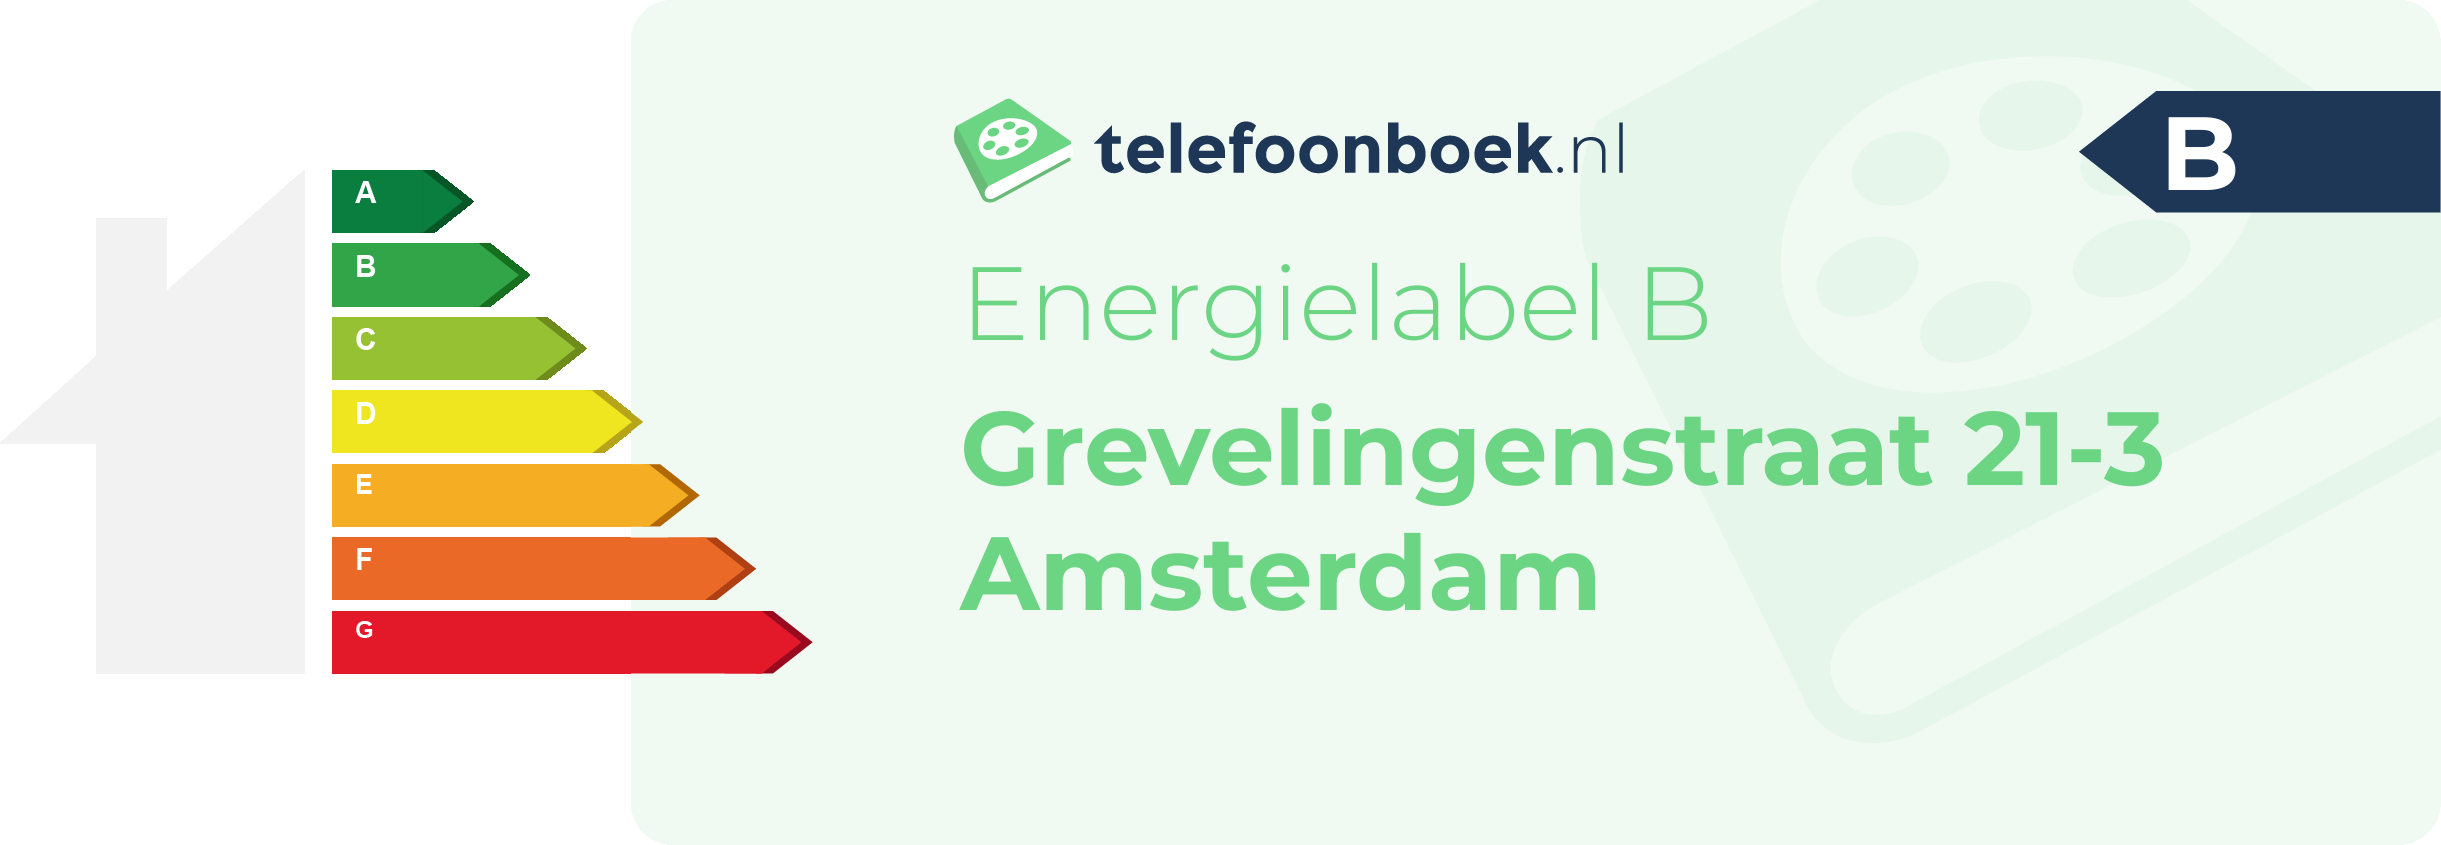 Energielabel Grevelingenstraat 21-3 Amsterdam